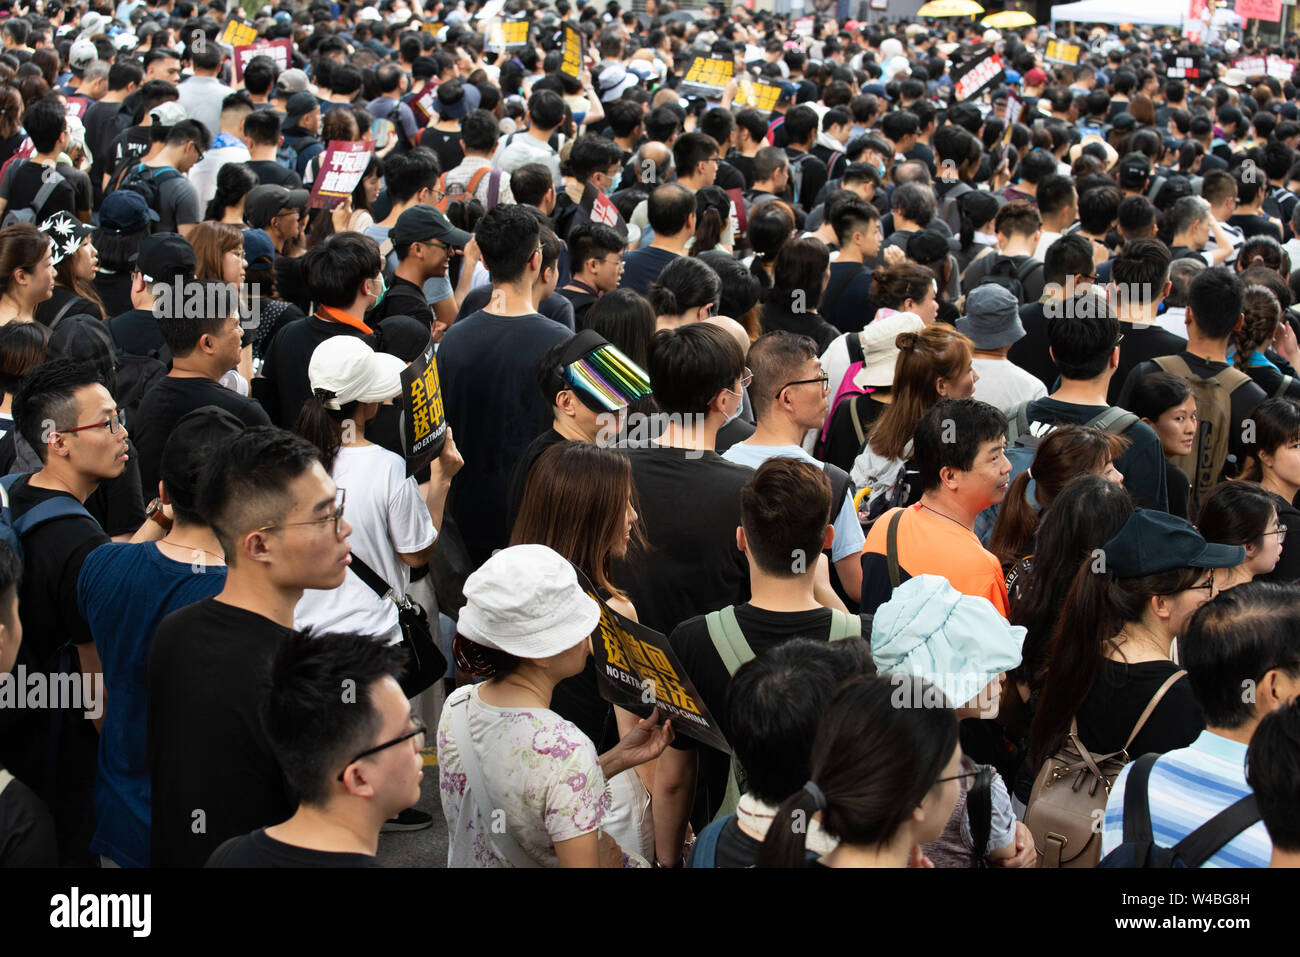 Les gens protestent dans la rue à hong kong. Plus de 100 000 manifestants sont descendus dans les rues de Hong Kong pour s'opposer à un projet de loi sur l'extradition controversée. Banque D'Images